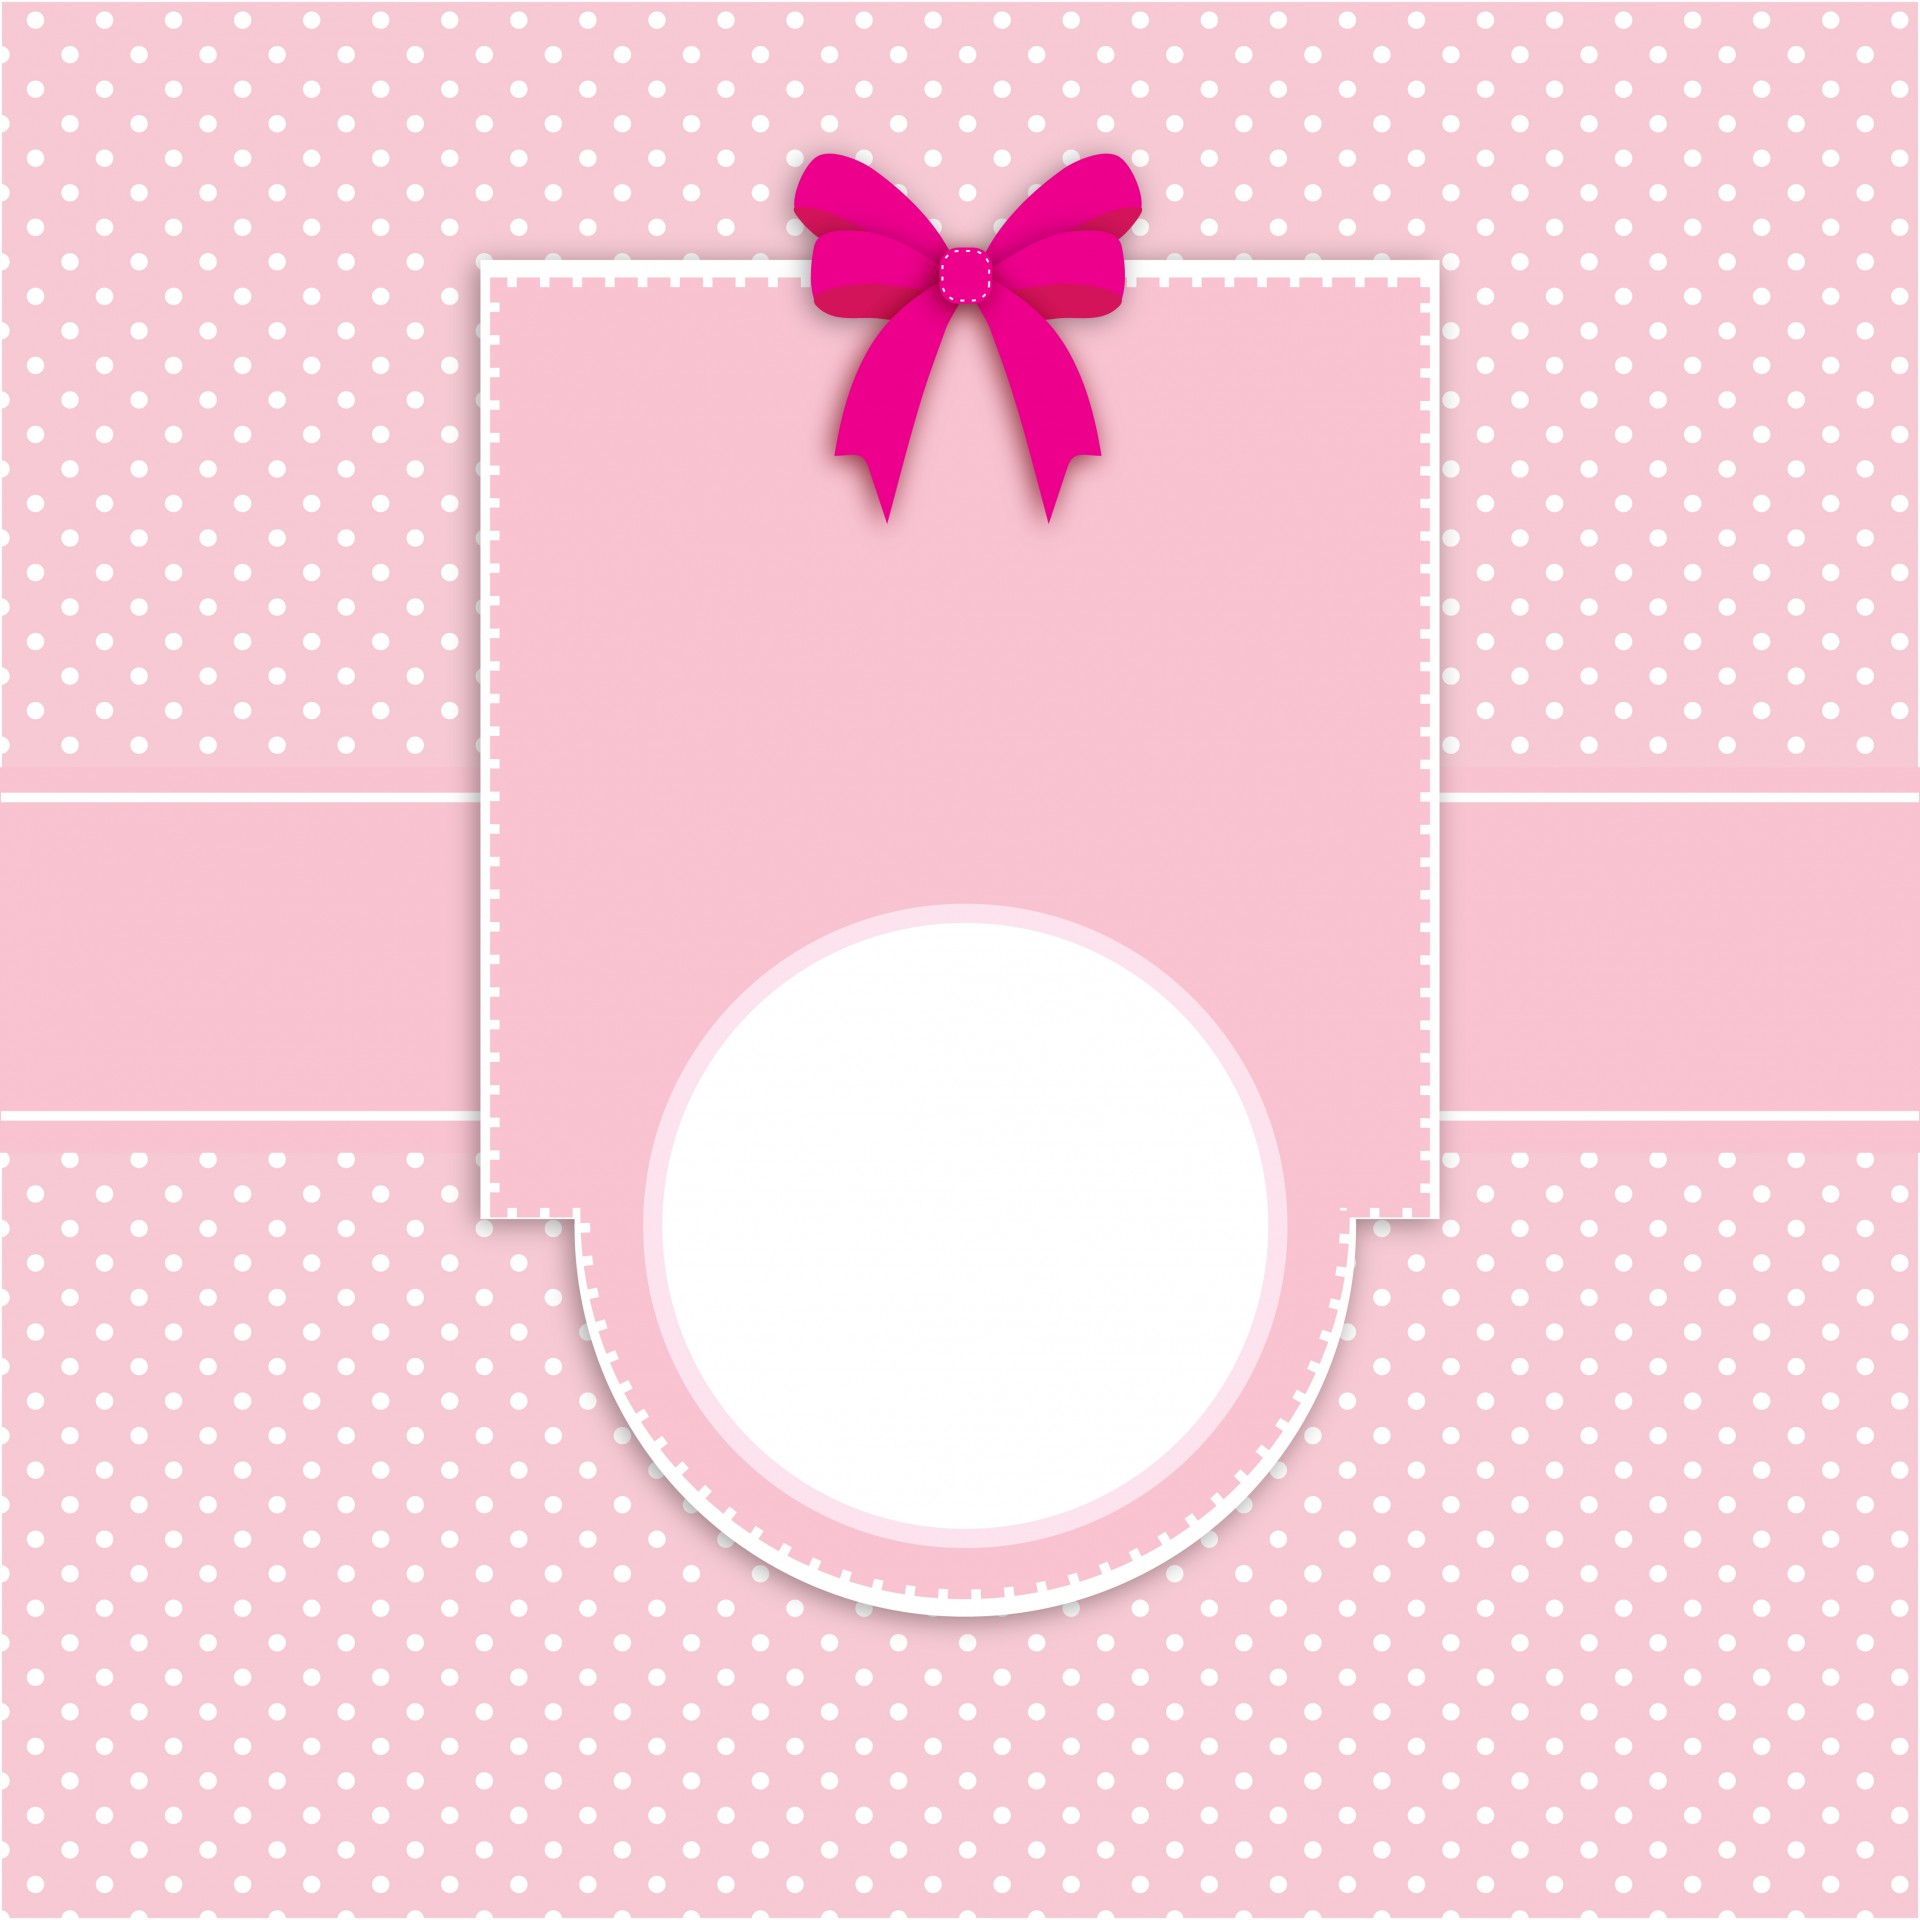 Card Invitation Polka Dots Pink